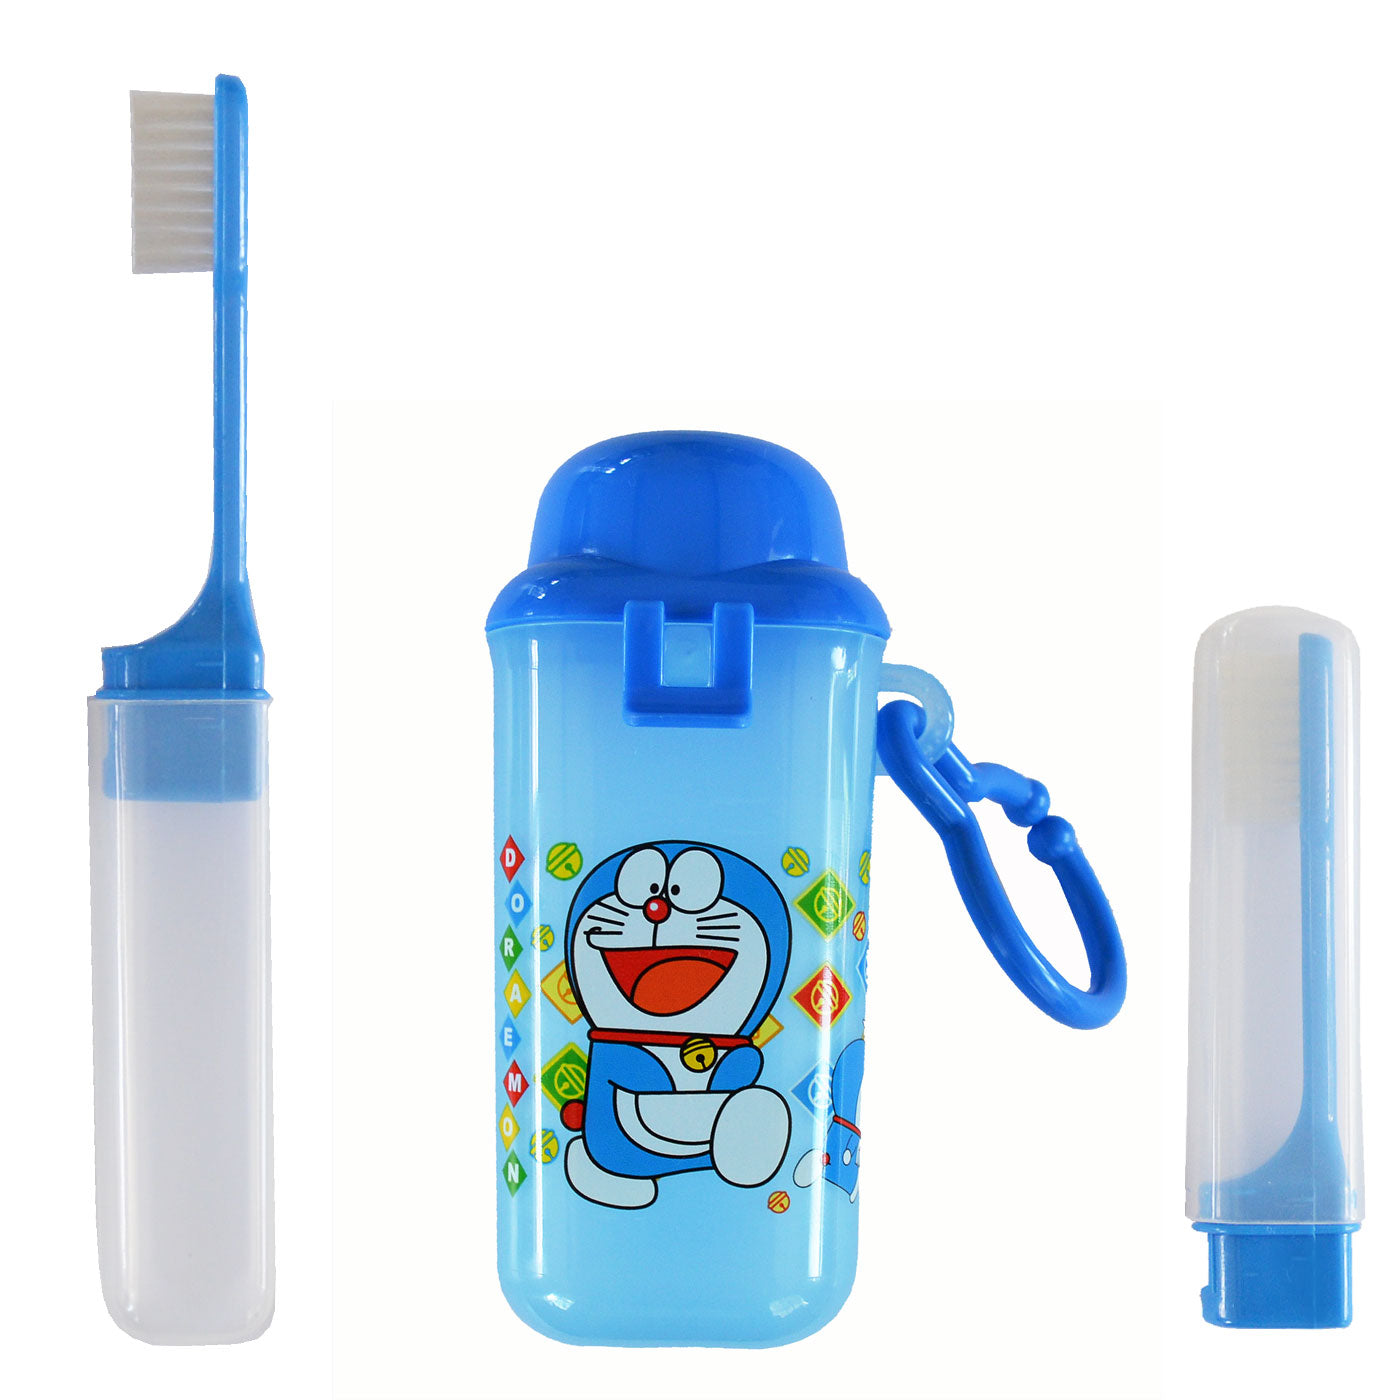 travel toothbrush kit nz